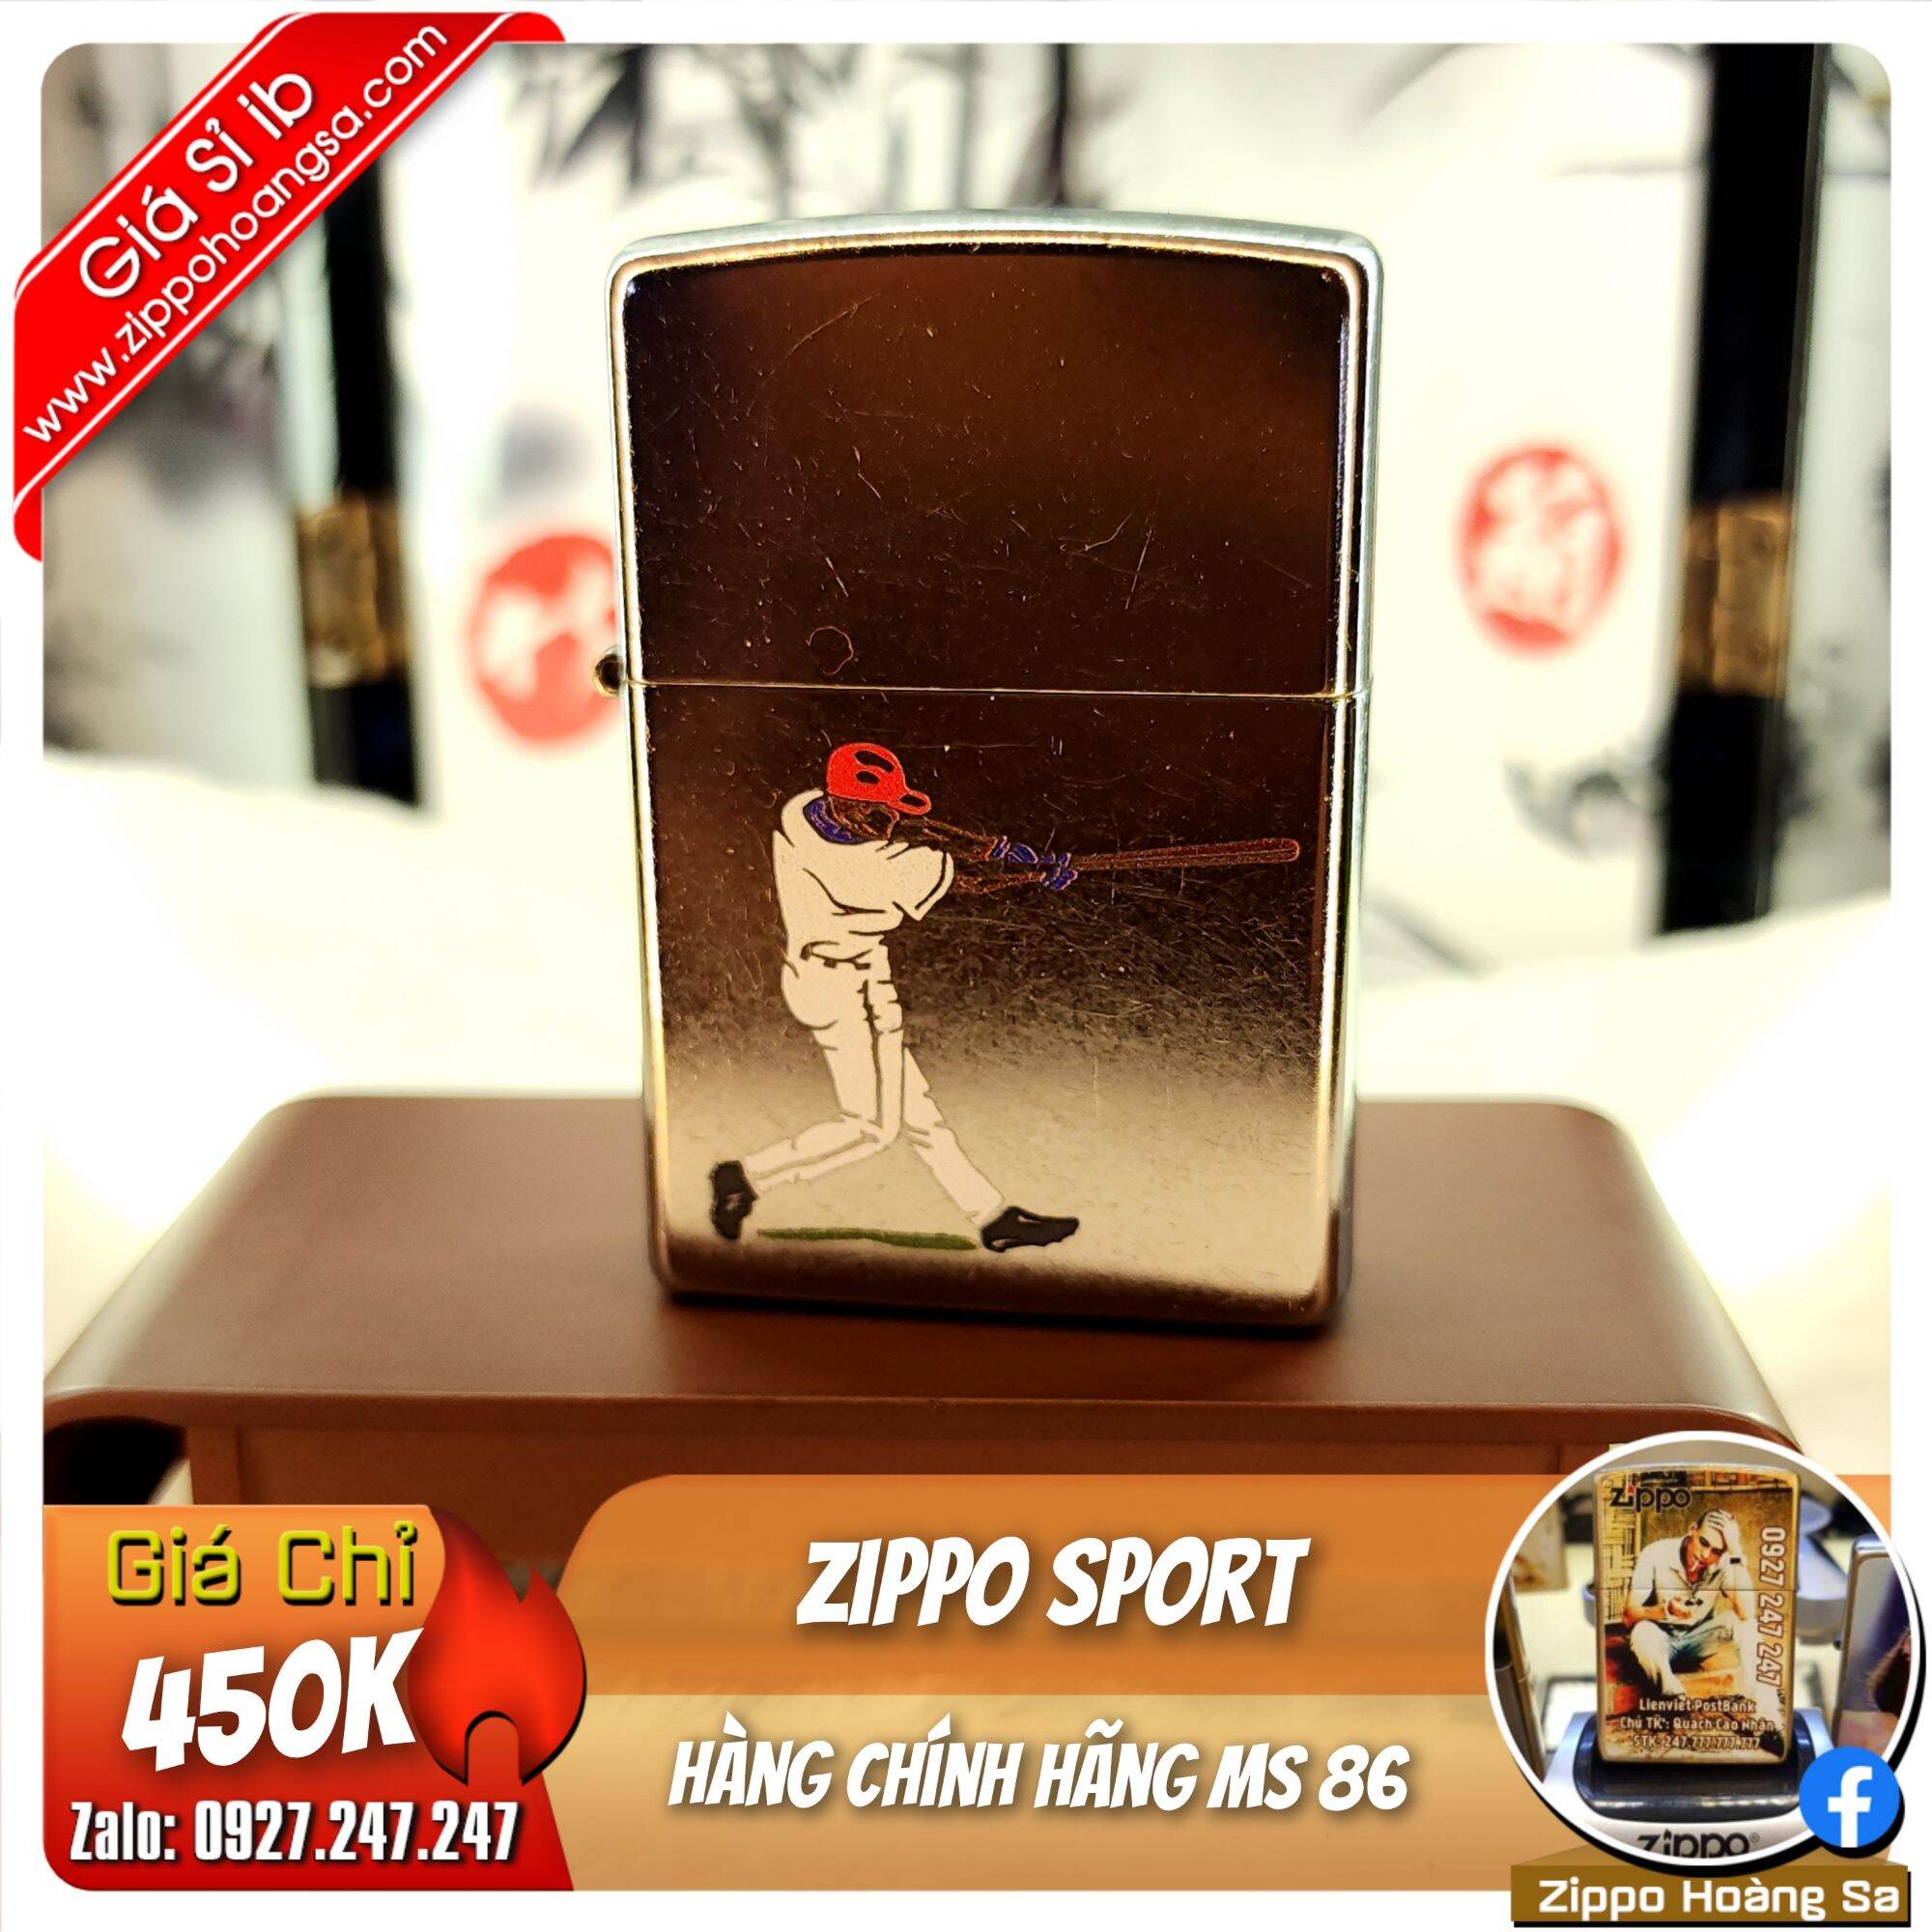 Zippo Sport - Bật lửa Zippo chính hãng MS 86